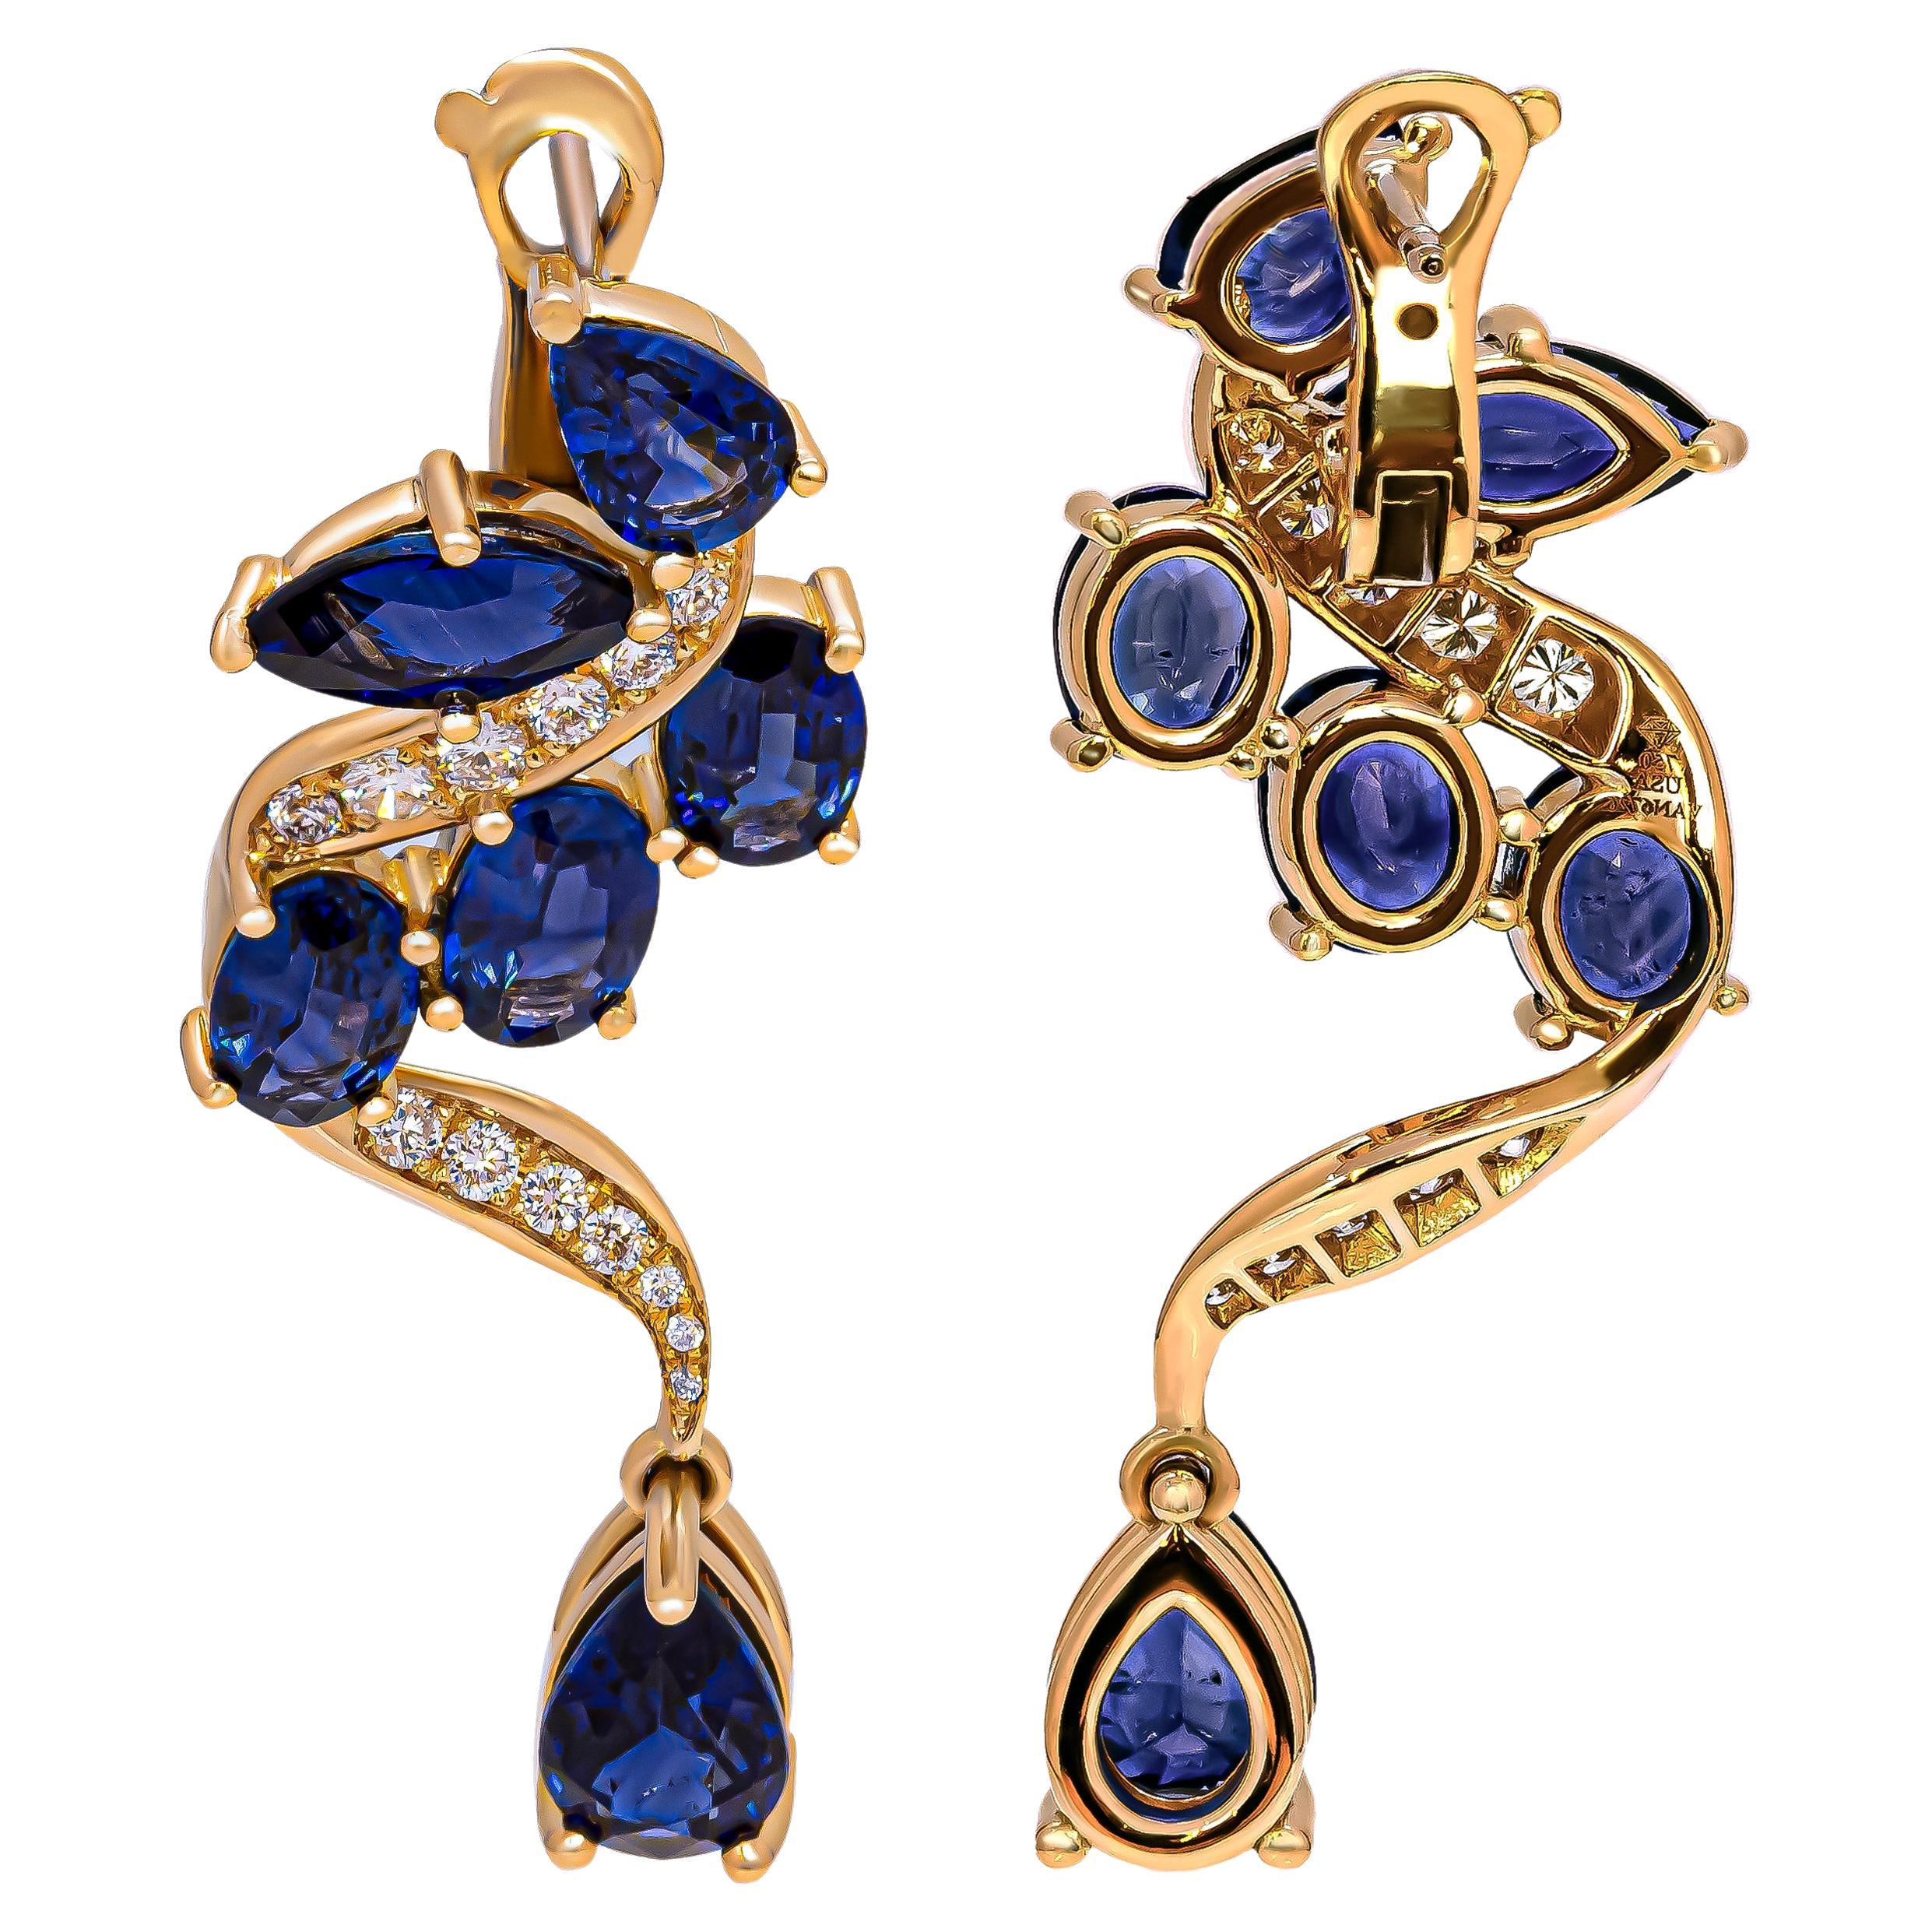 Bienvenue dans notre exquise collection de boucles d'oreilles pendantes en or jaune 18 carats, ornées de saphirs bleus et de diamants d'une beauté captivante. Ces élégantes boucles d'oreilles présentent un agencement fascinant de pierres précieuses,